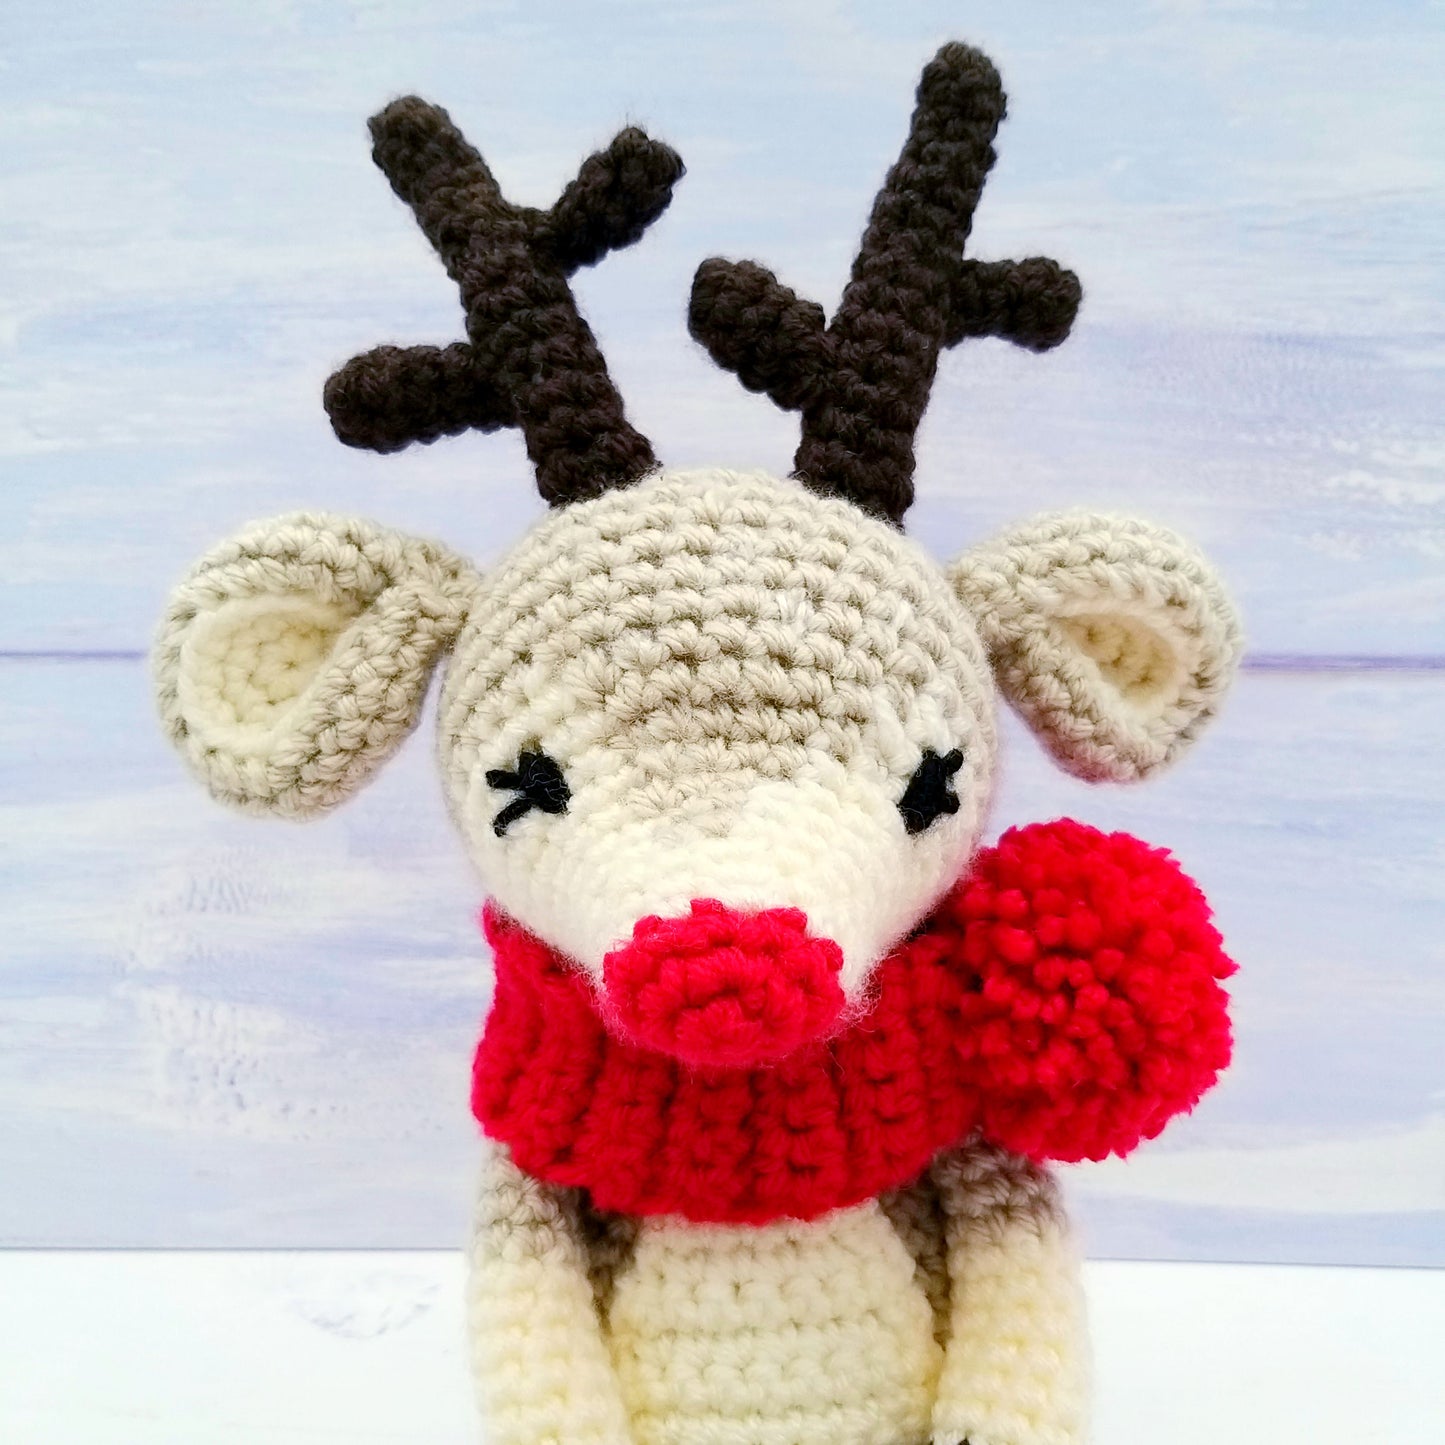 Crochet Reindeer - Face detail